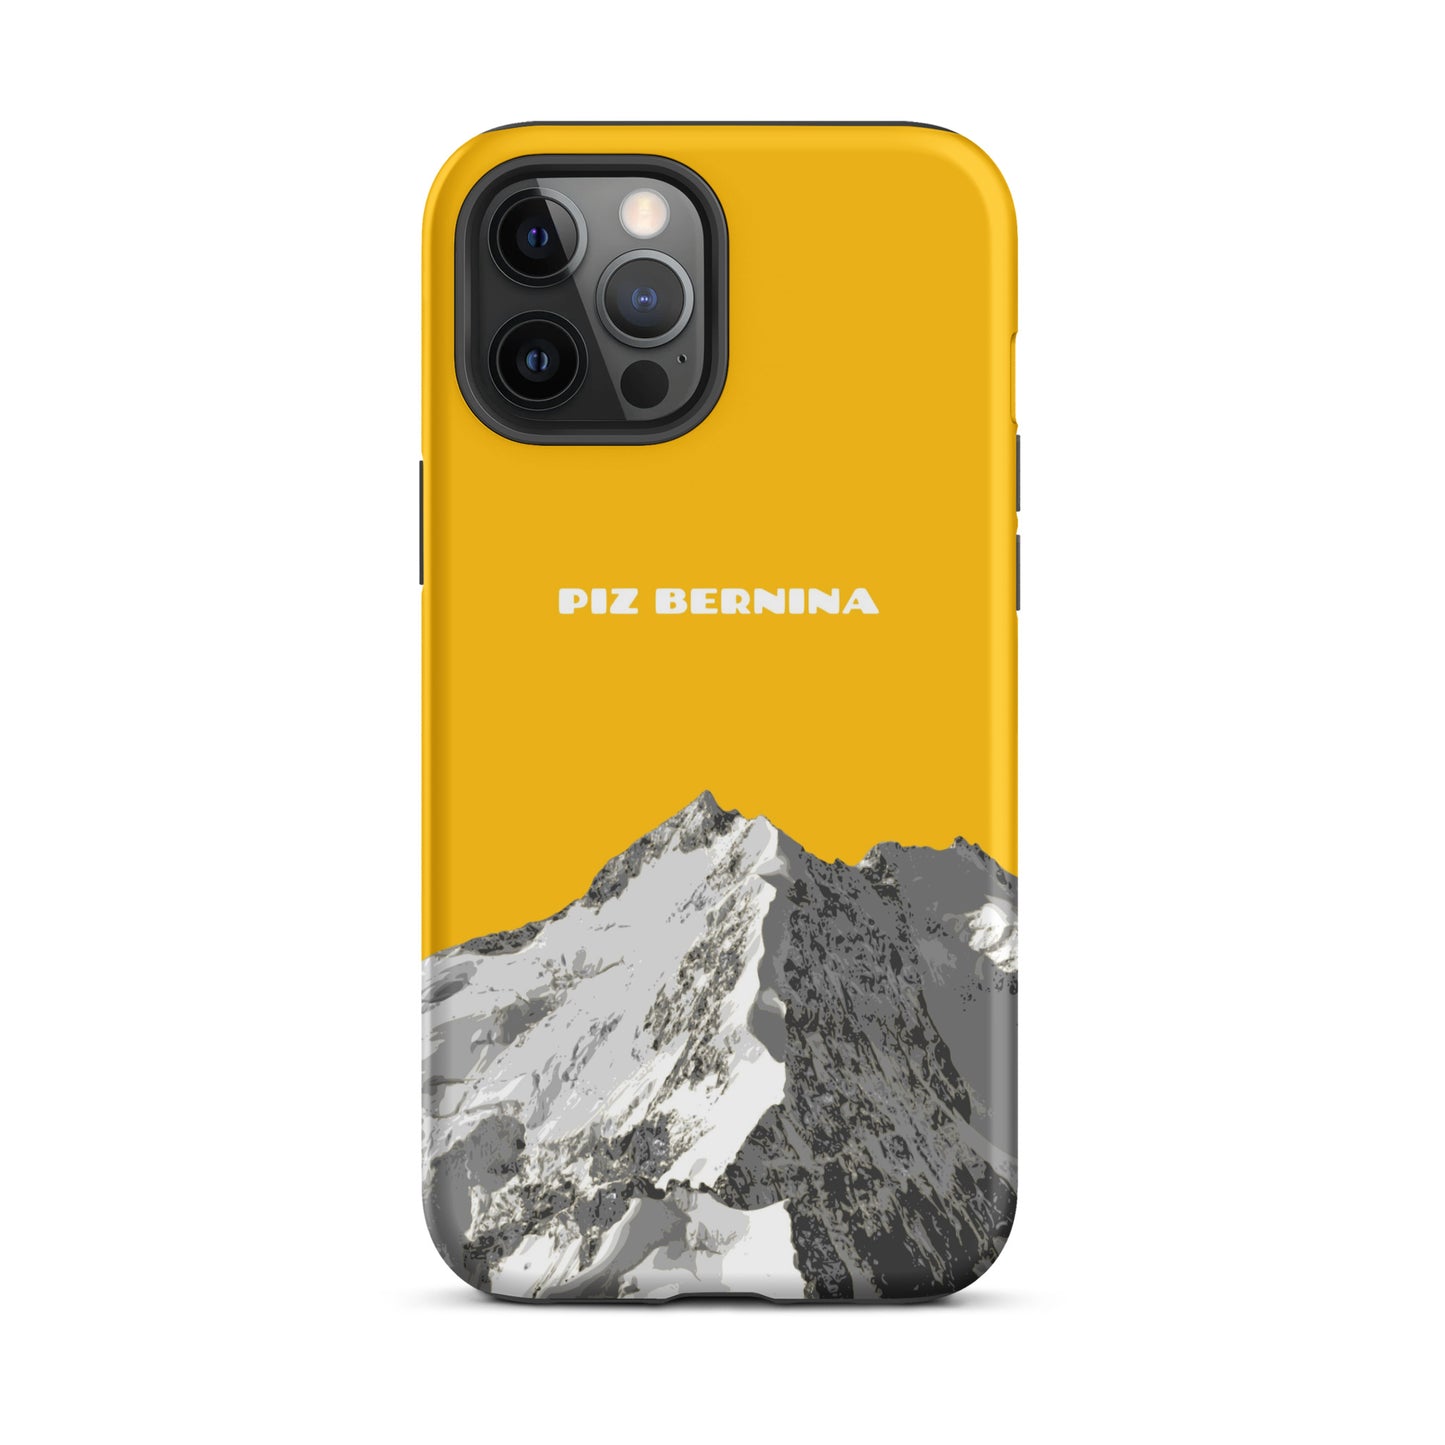 Hülle für das iPhone 12 Pro Max von Apple in der Farbe Goldgelb, dass den Piz Bernina in Graubünden zeigt.